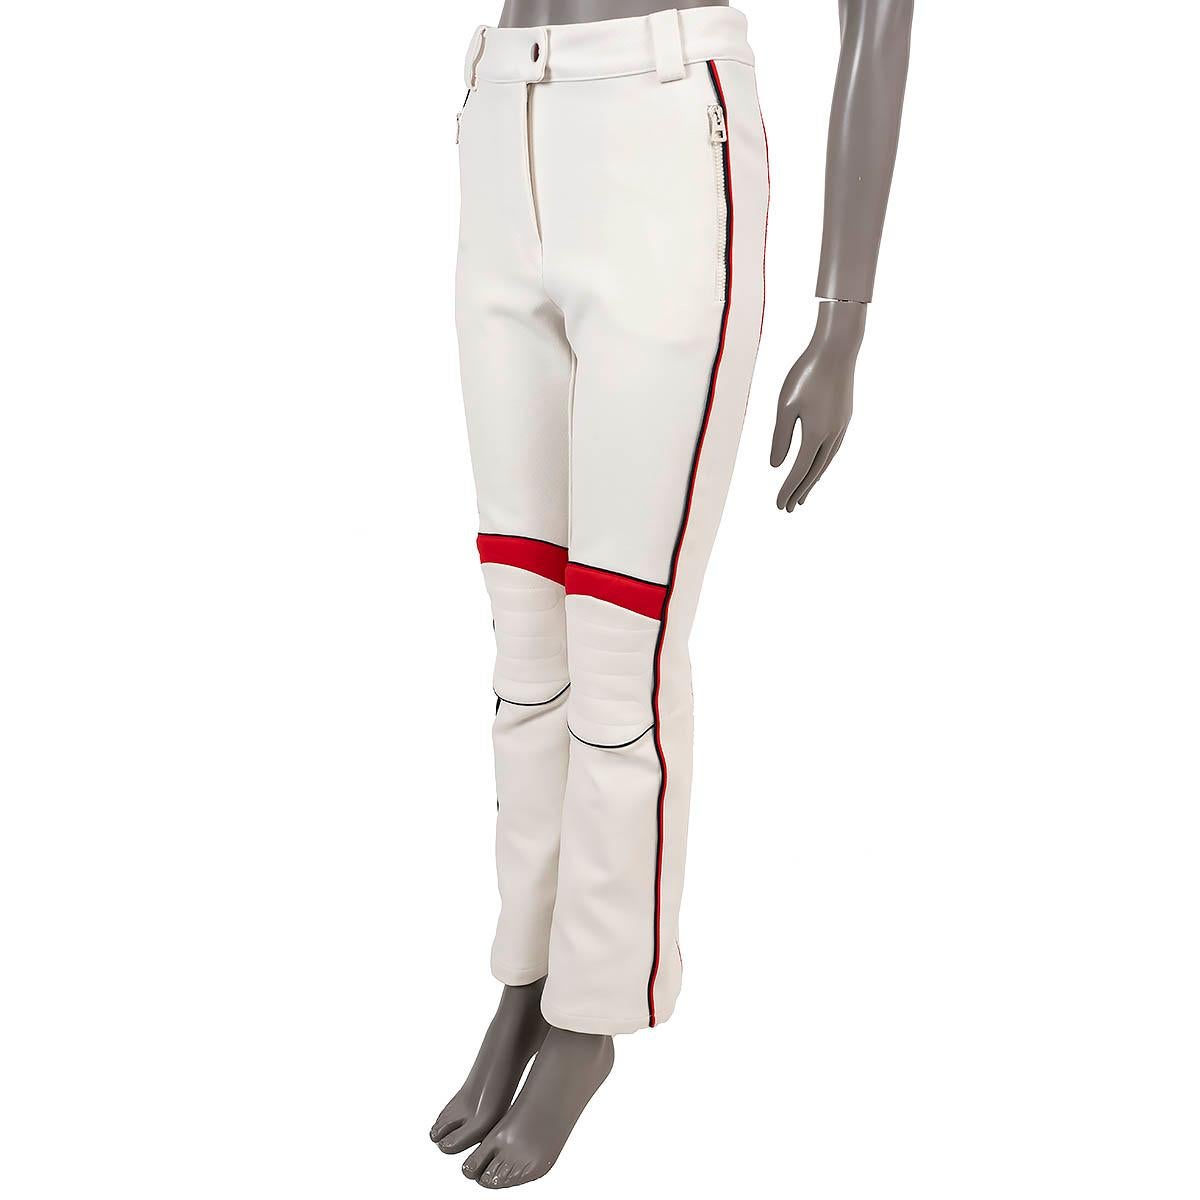 100% authentique pantalon de ski Christian Dior en tissu technique blanc cassé (47% polyamide, 38% acrylique, 13% laine & 2% élasthanne). Elle présente une jambe évasée avec un ourlet zippé, une bande latérale avec logo et des genoux matelassés. Se